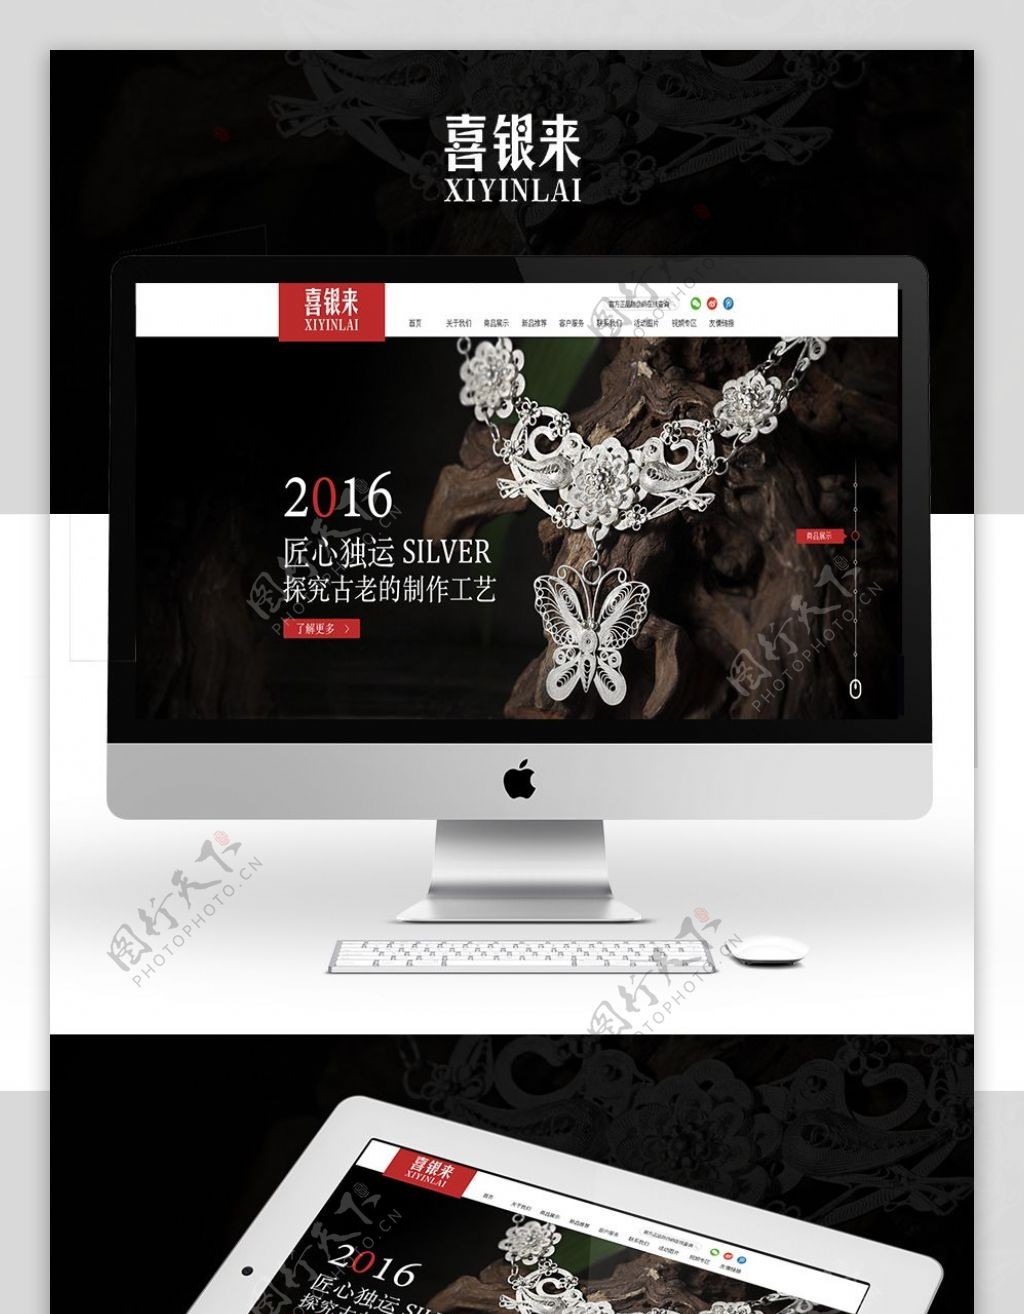 原创gui设计展示包含网页及手机端页面